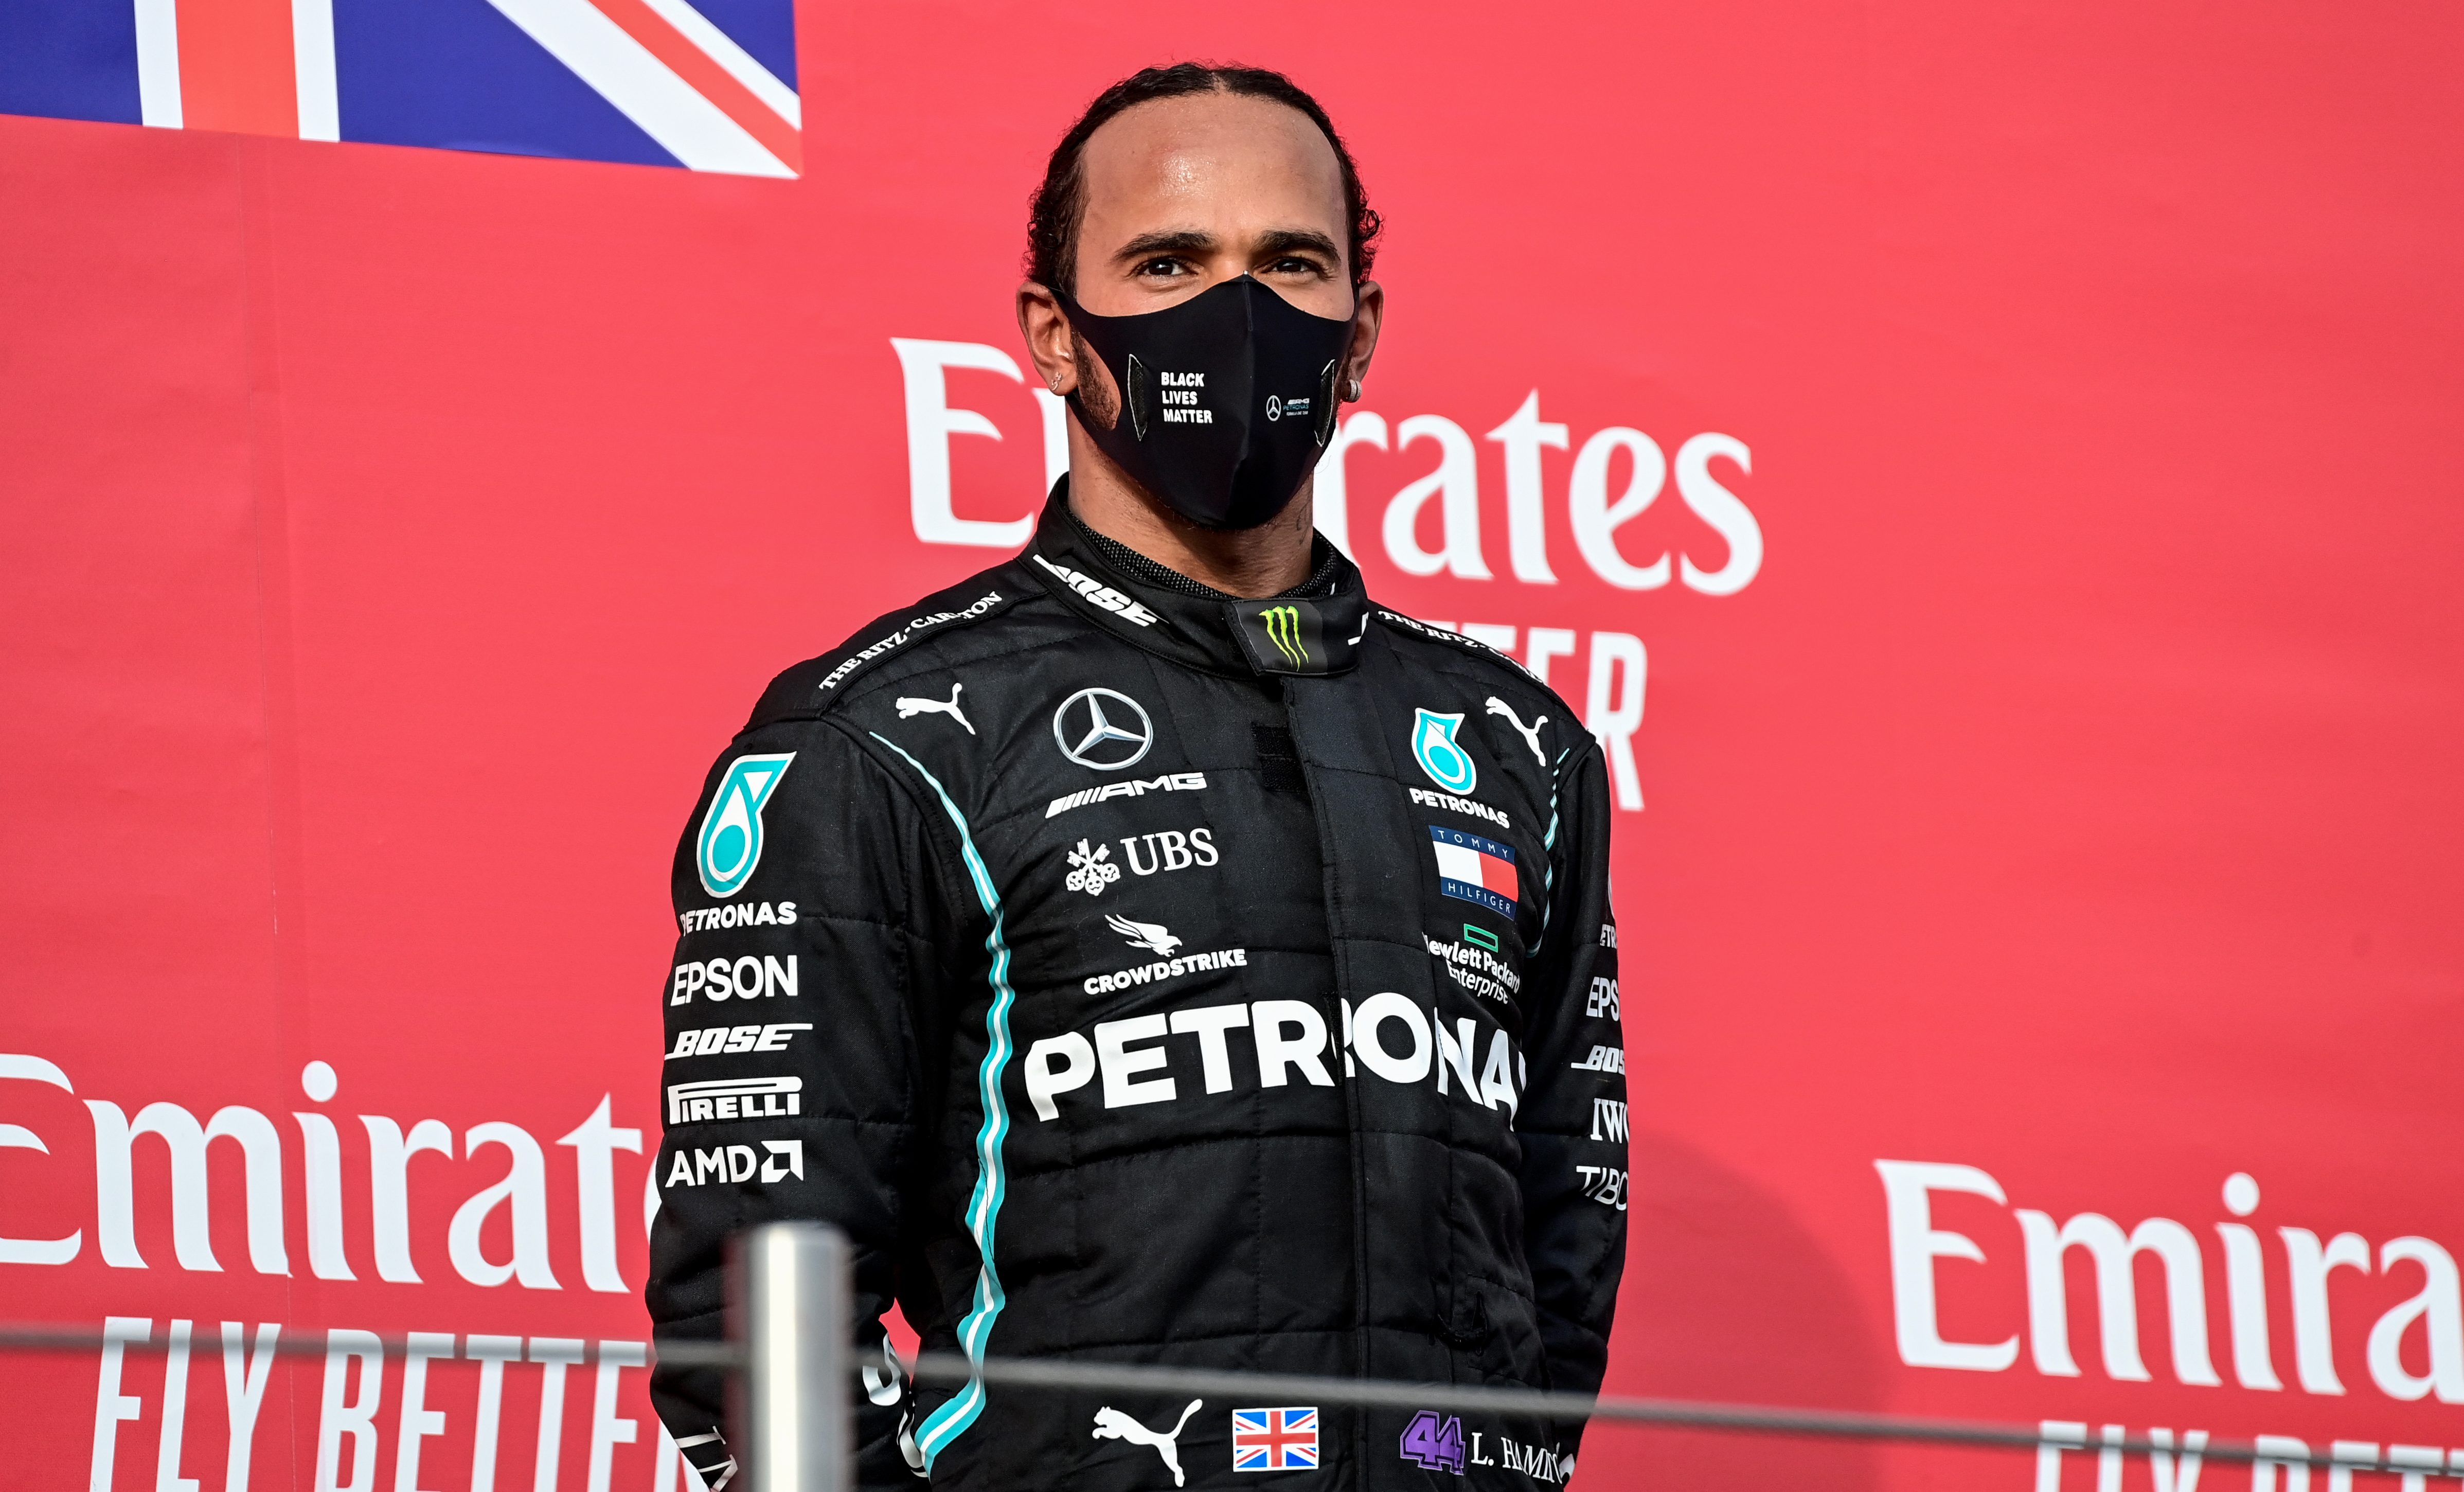 Lewis Hamilton gana en Imola y Mercedes suma 7º título mundial de constructores